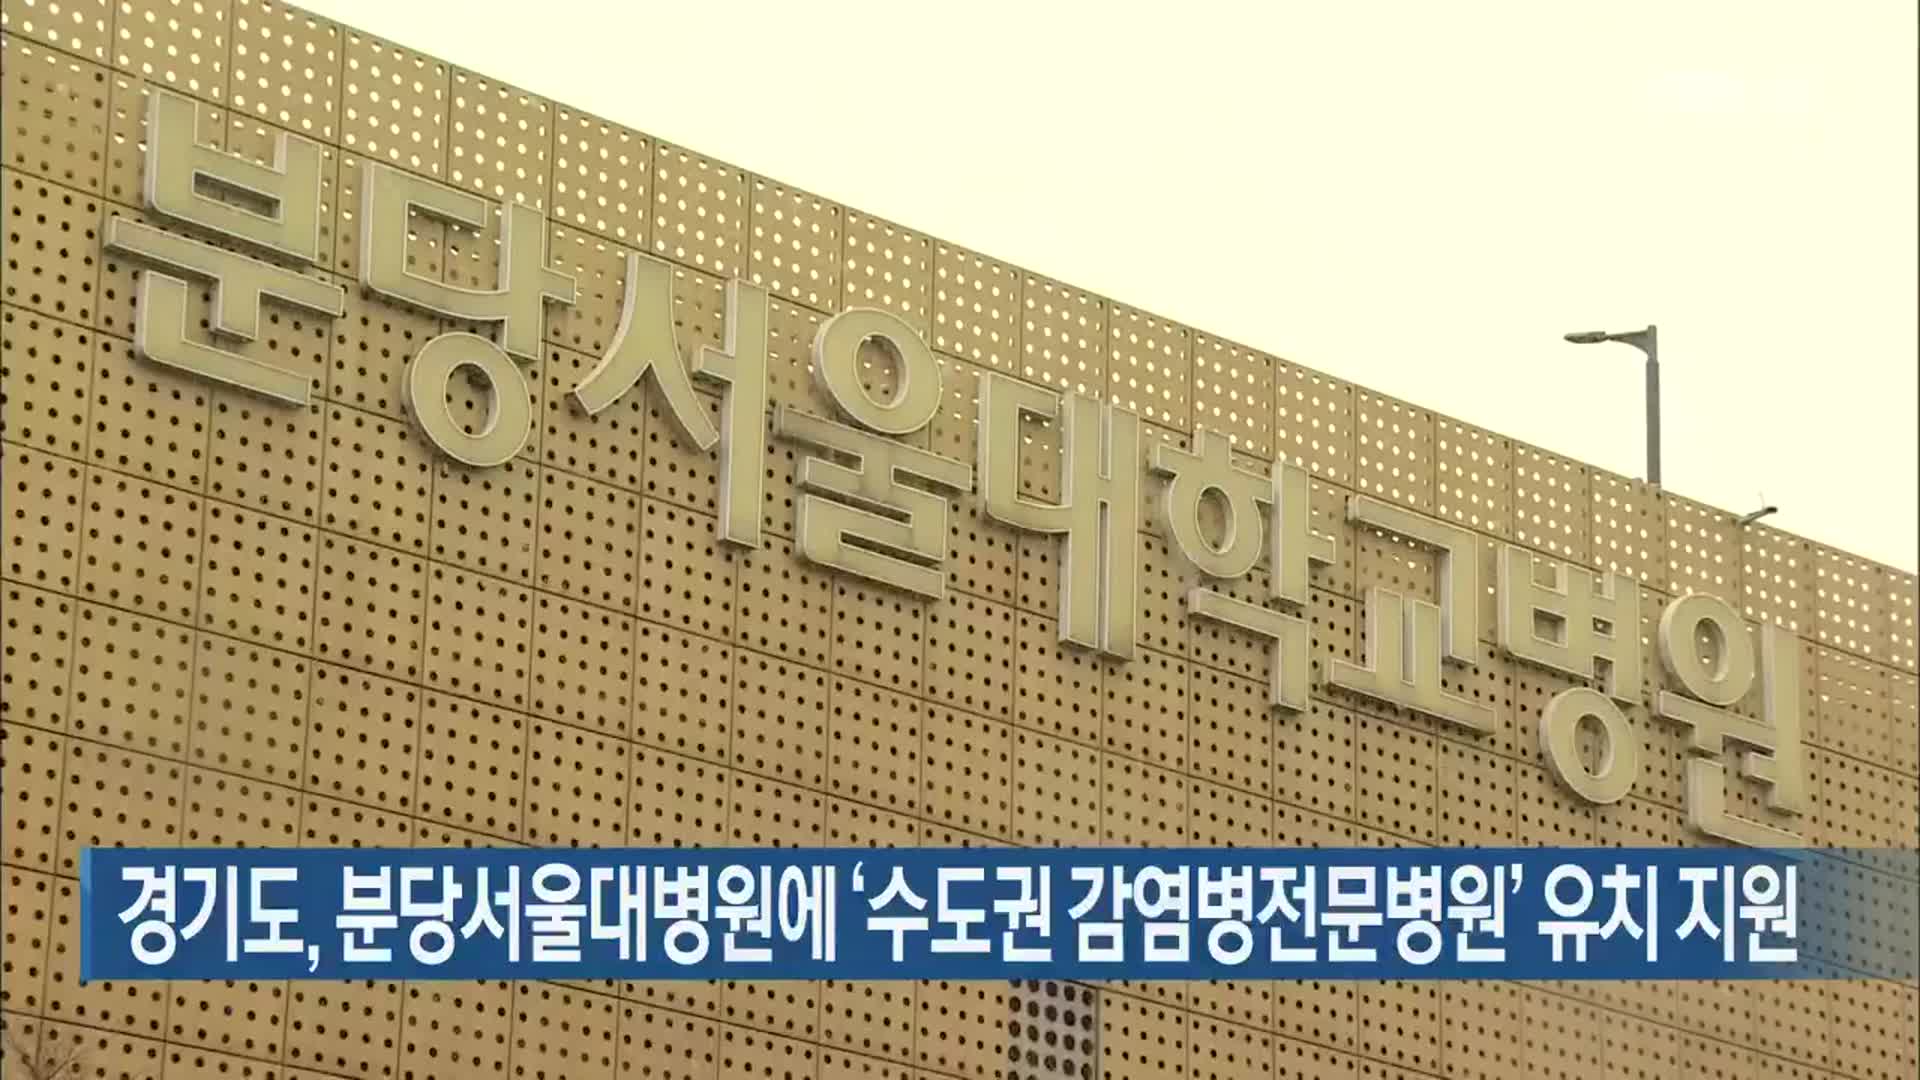 경기도, 분당서울대병원에 ‘수도권 감염병전문병원’ 유치 지원